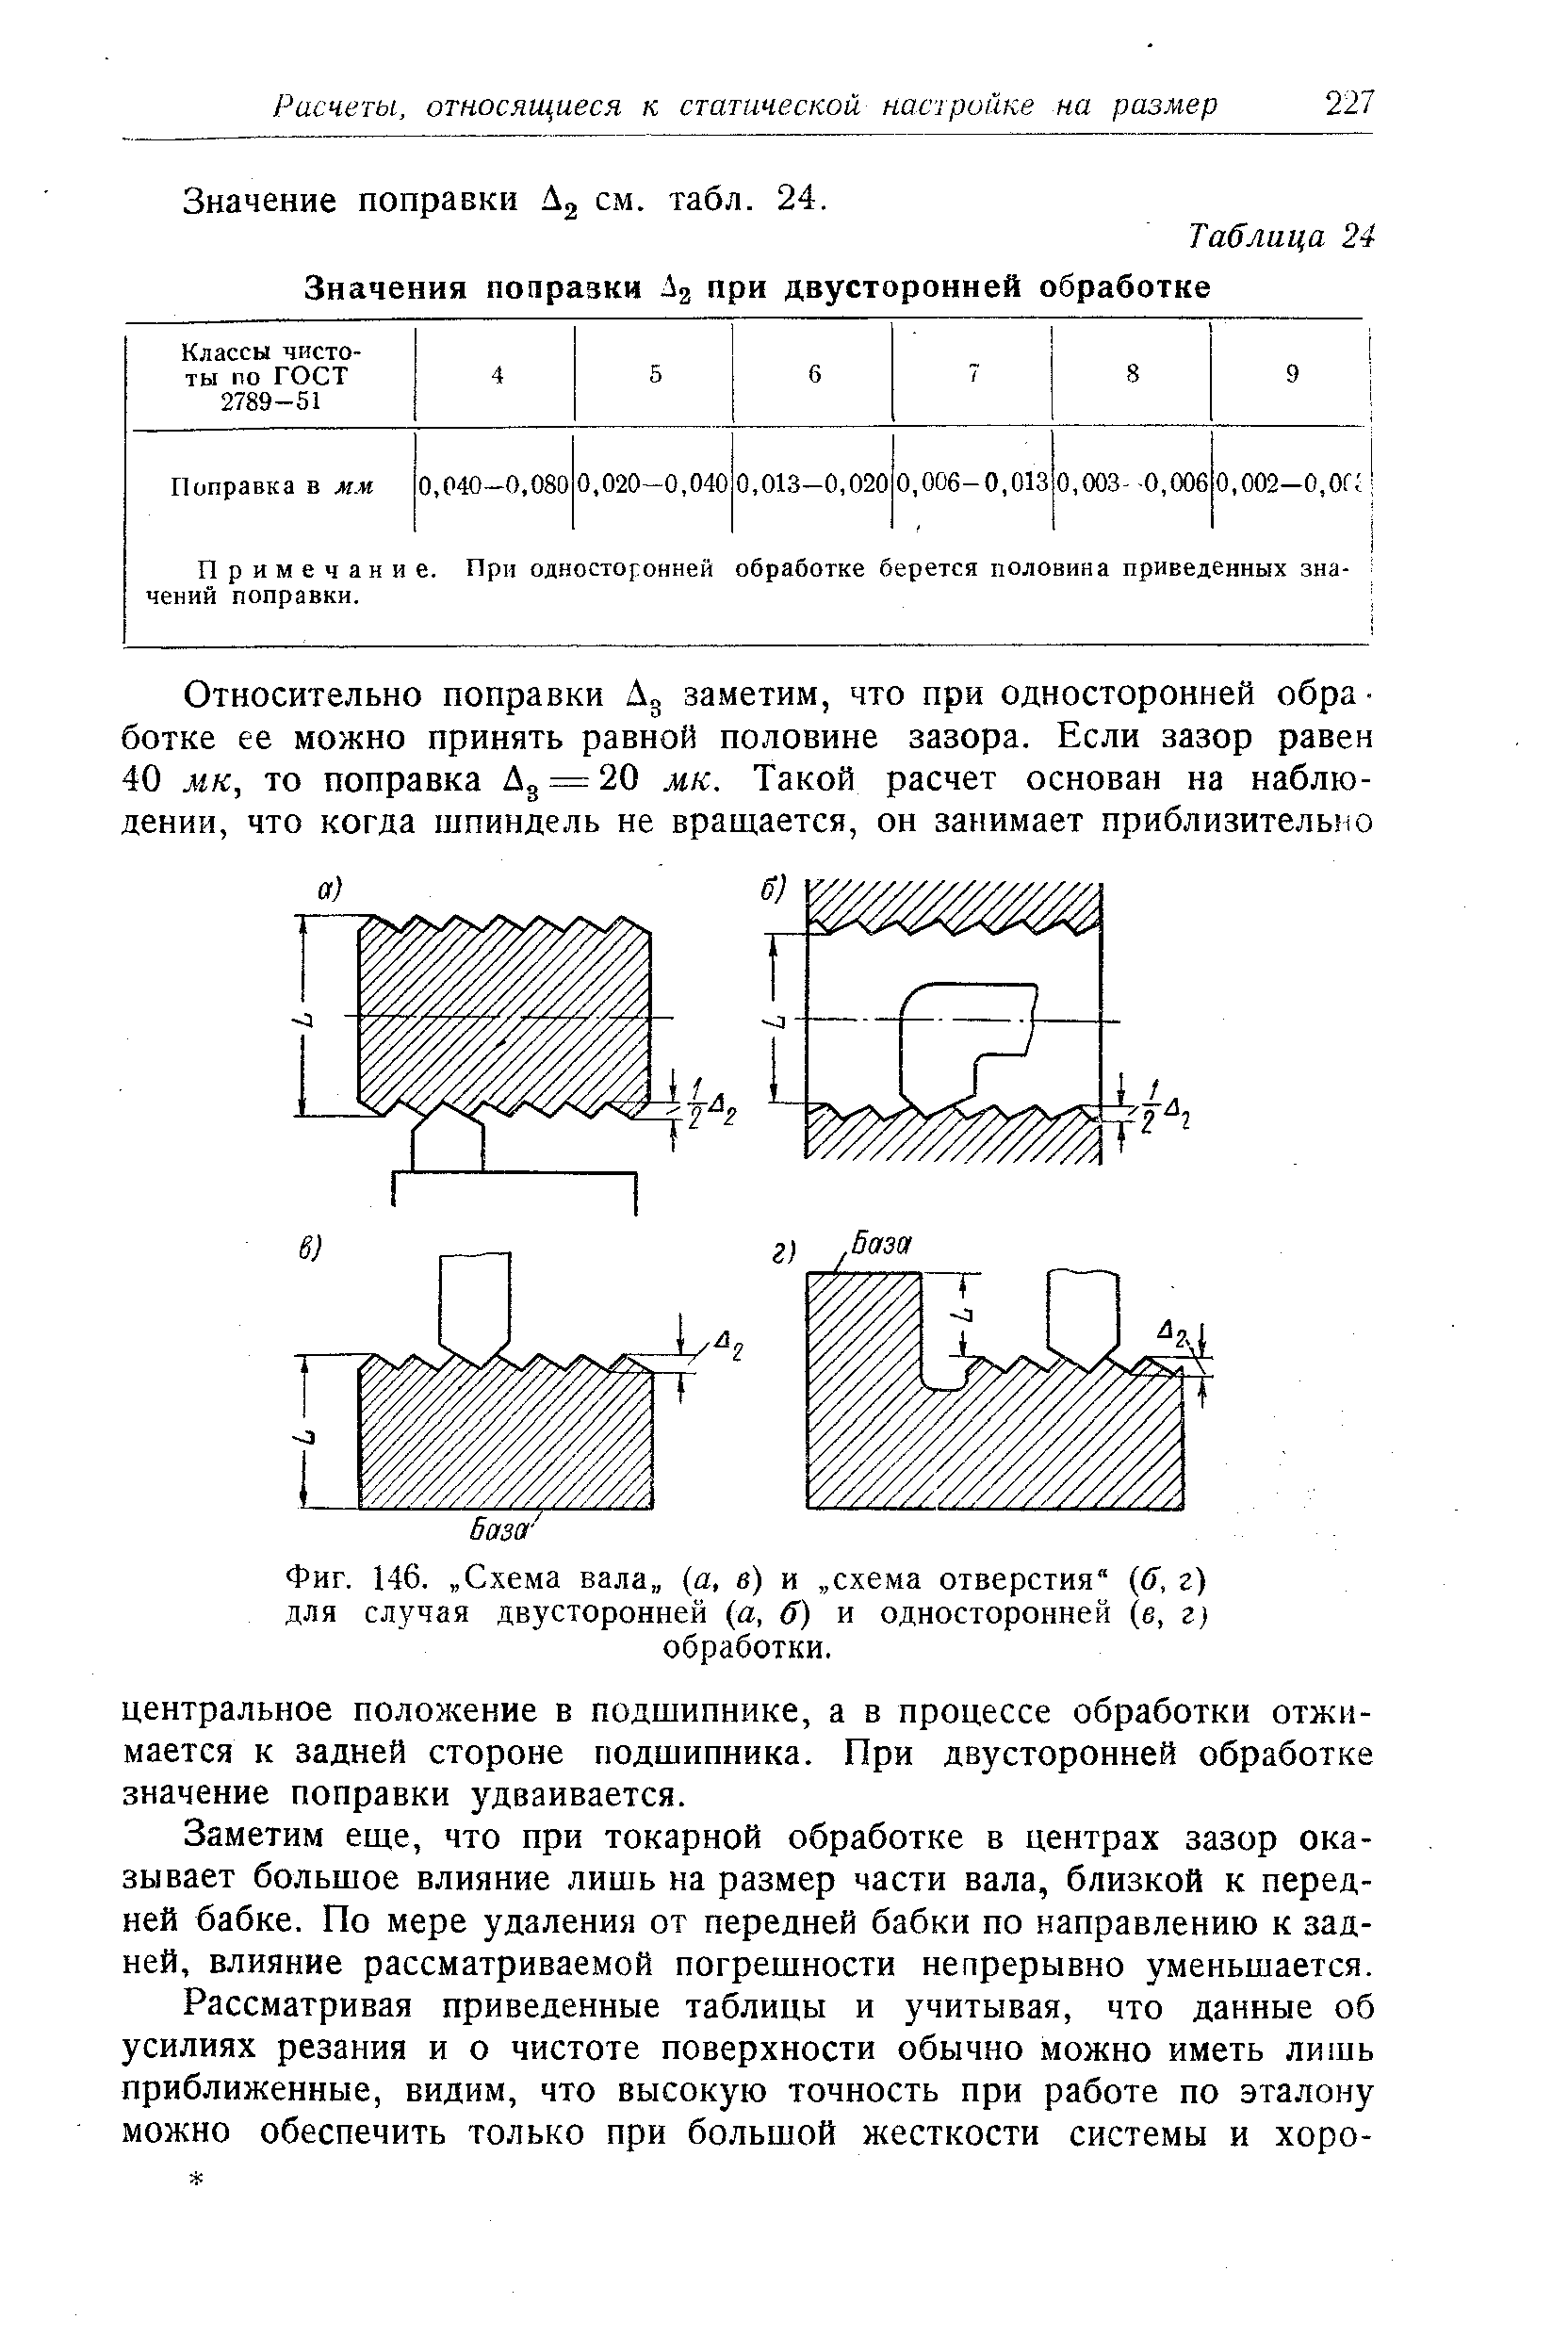 Фиг. 146. Схема вала,, а, в) и схема отверстия (б, г) для случая двусторонней (а, б) и односторонне (в, г) обработки.
